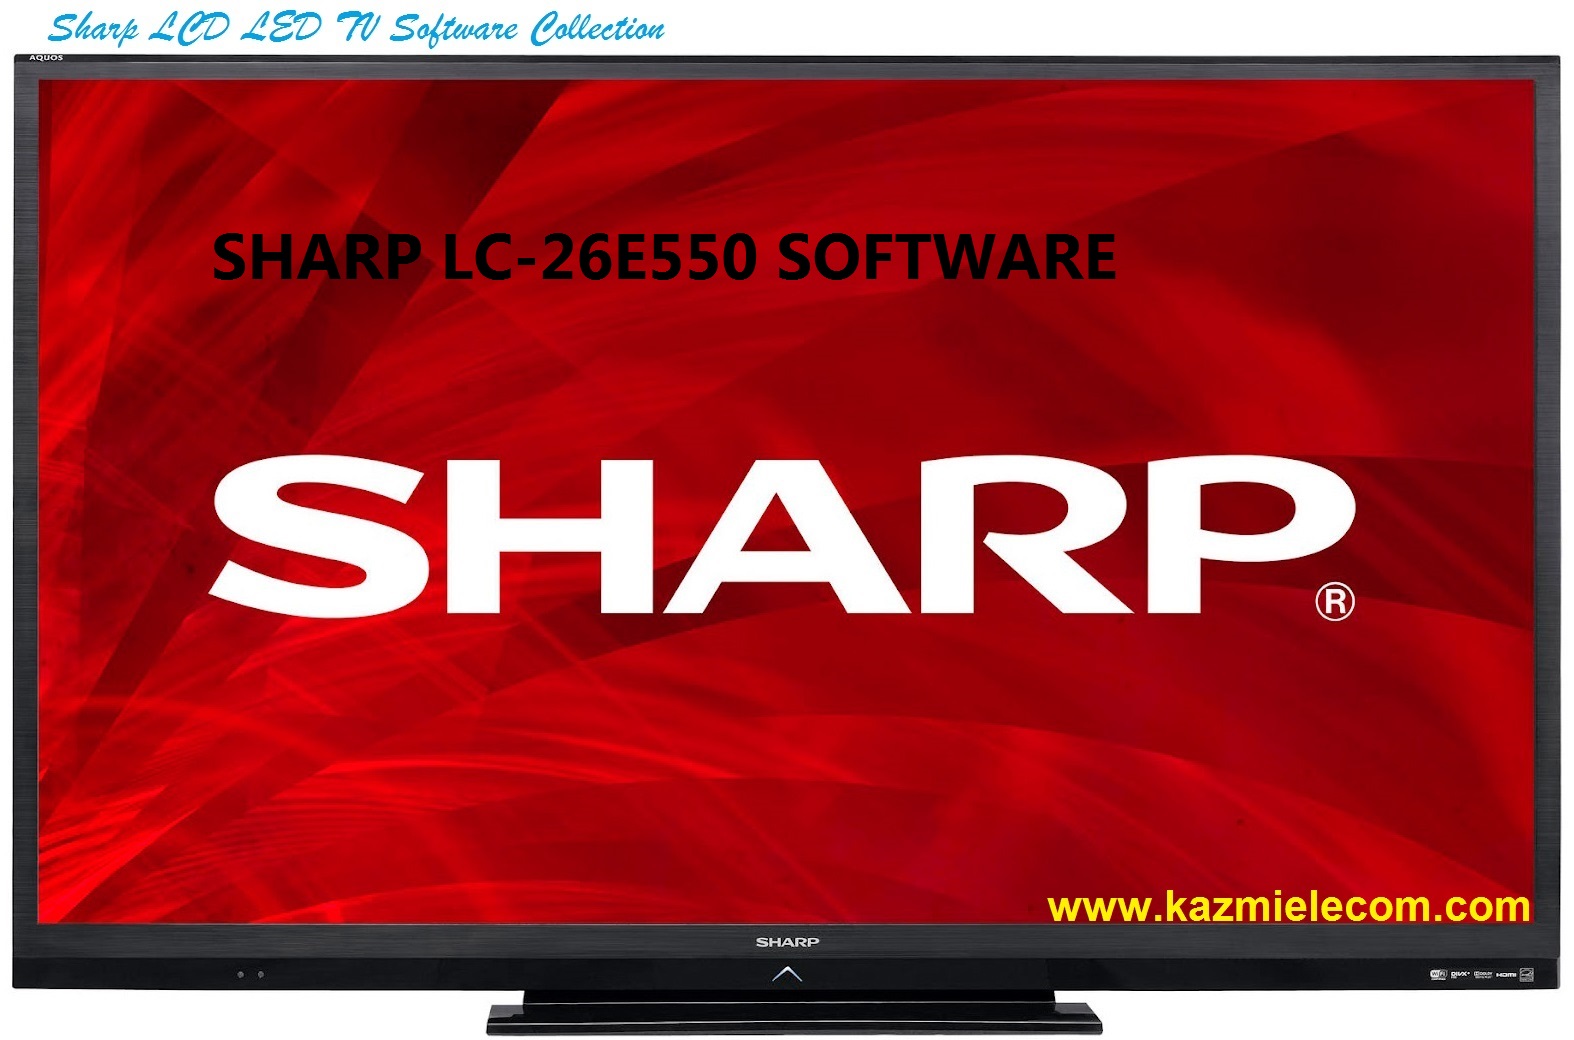 Sharp Lc-26E550